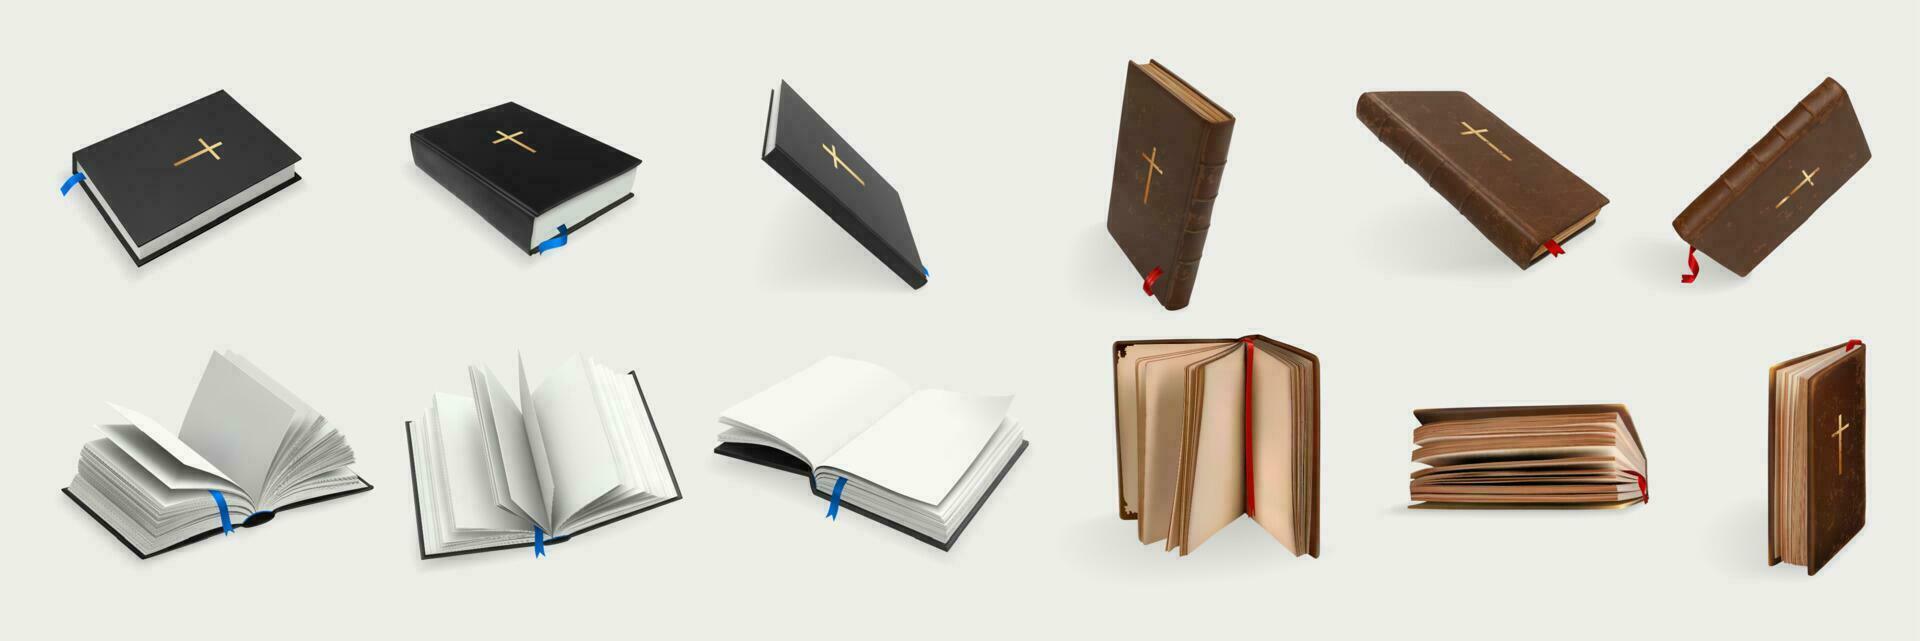 realistico cristiano santo Bibbia impostato collezione vettore